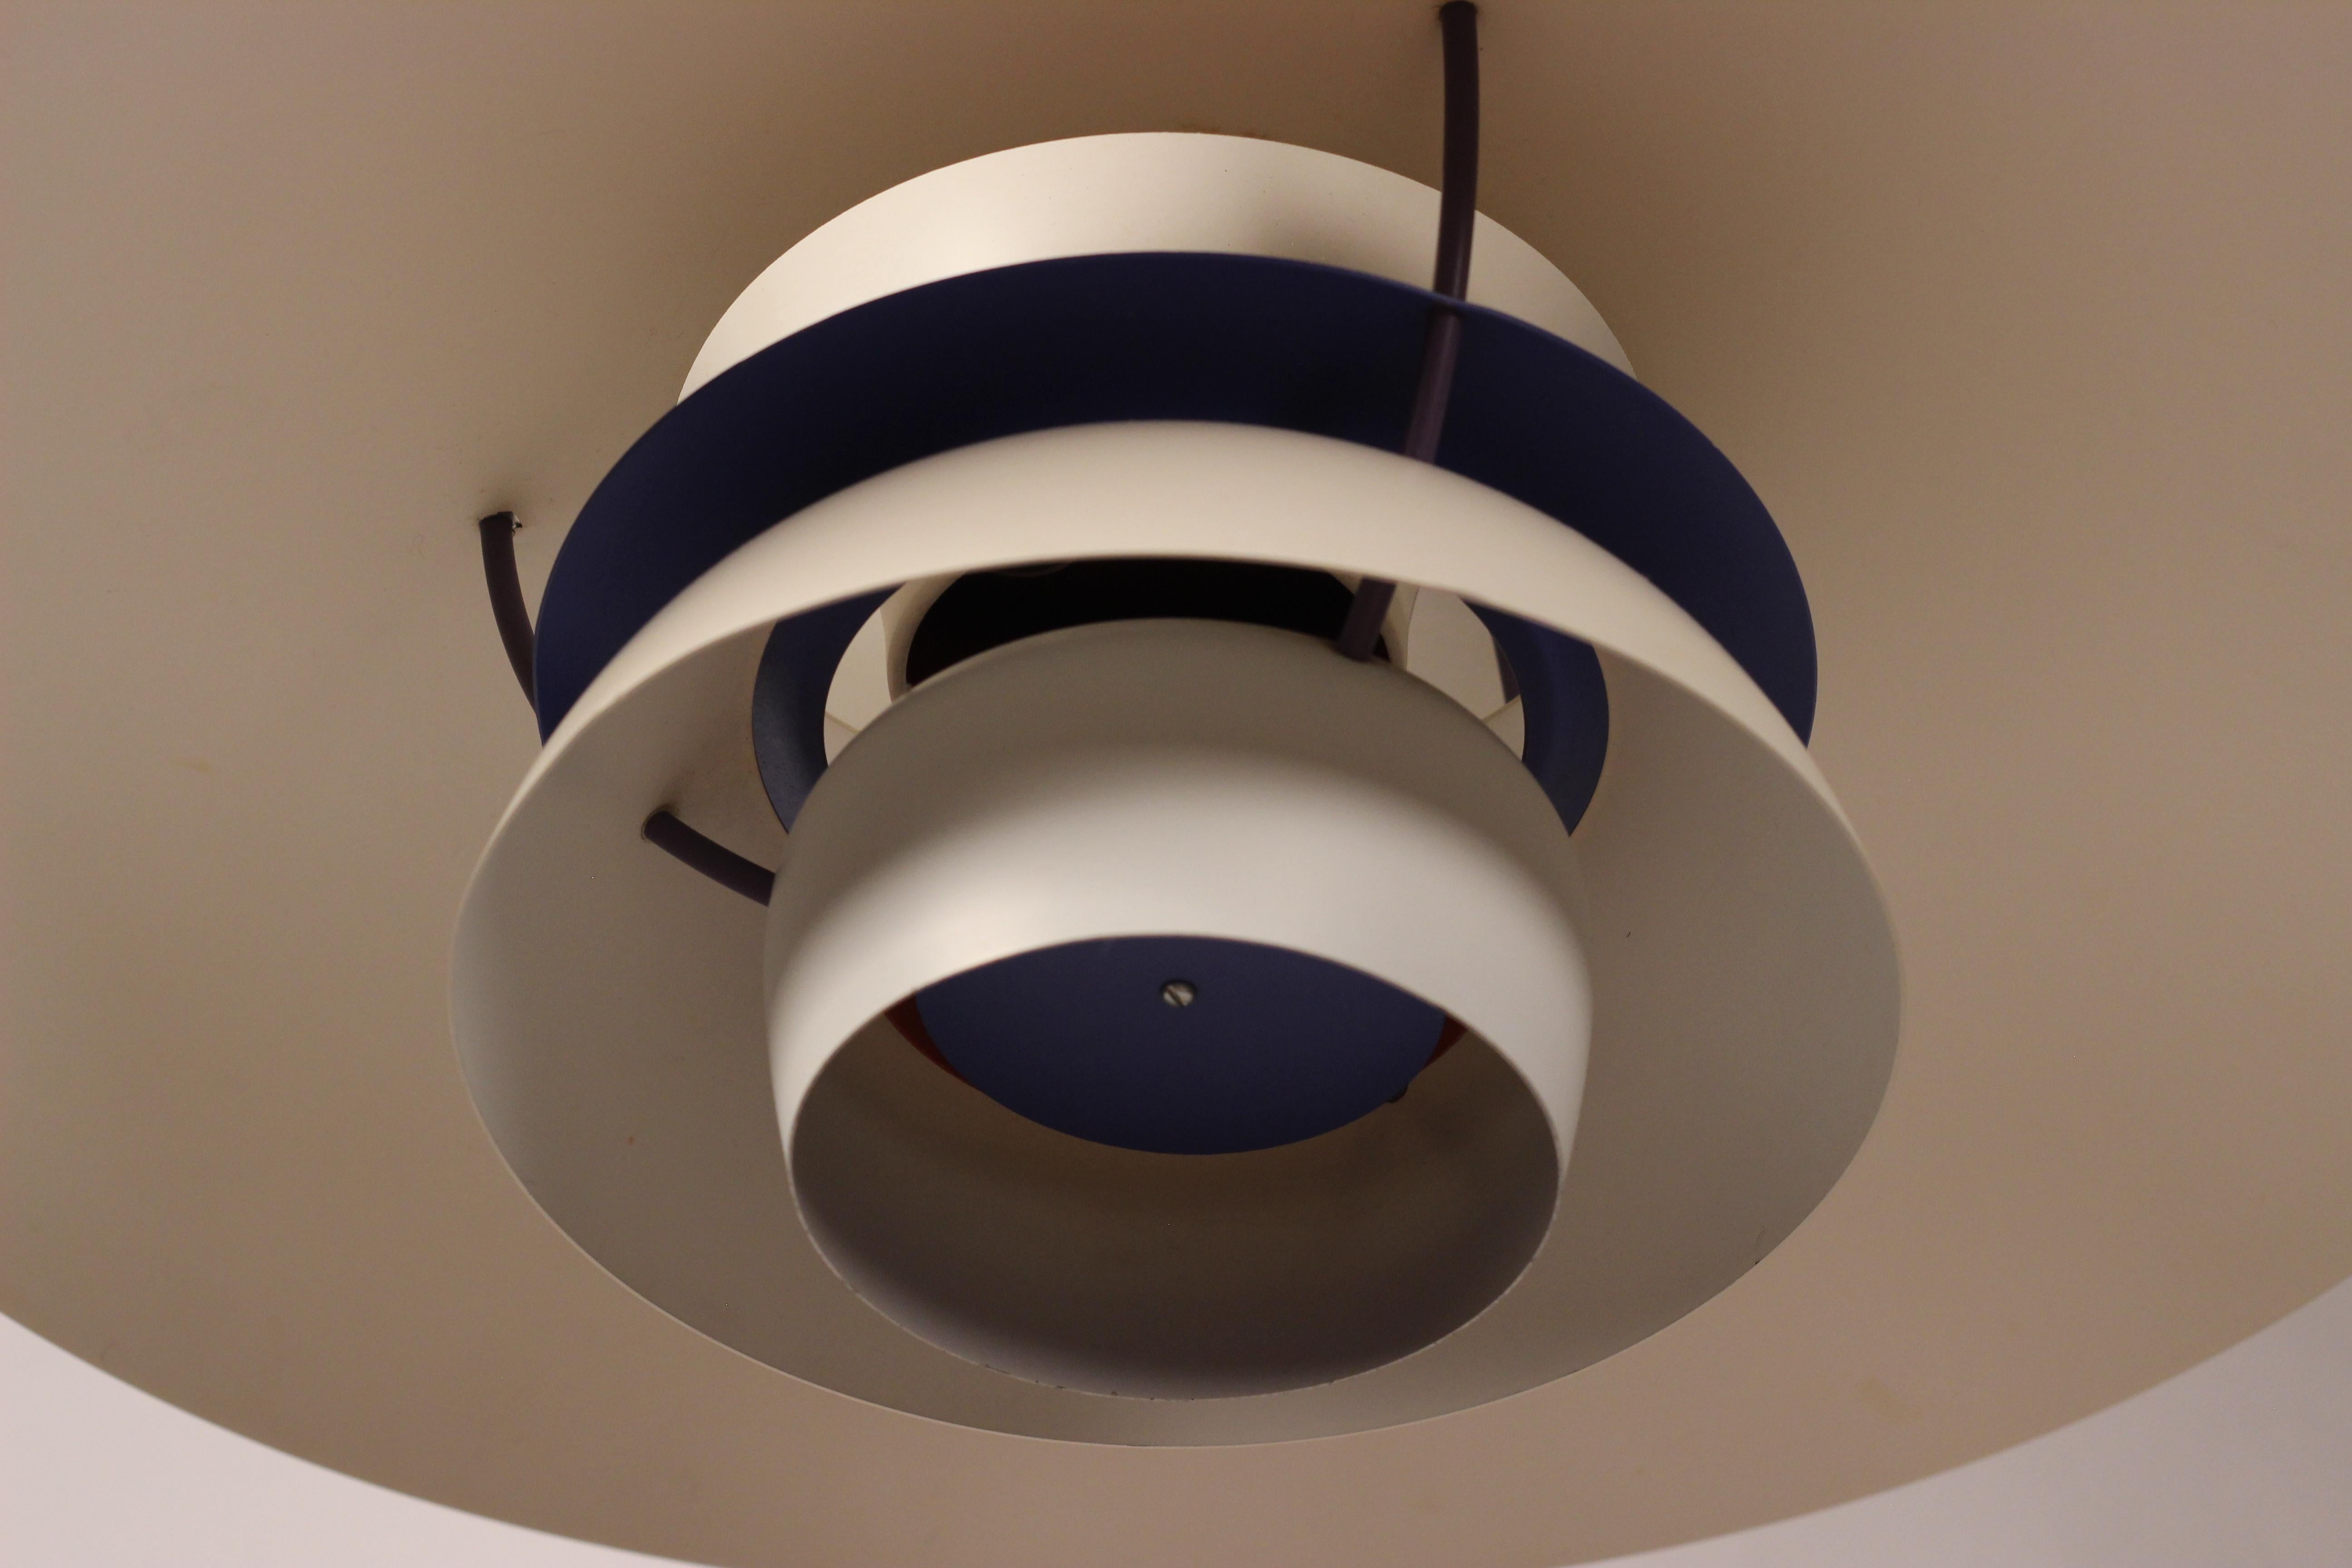 Spun Scandinavian Modern PH5 Pendant Ceiling Light Designed by Poul Henningsen 1960’s